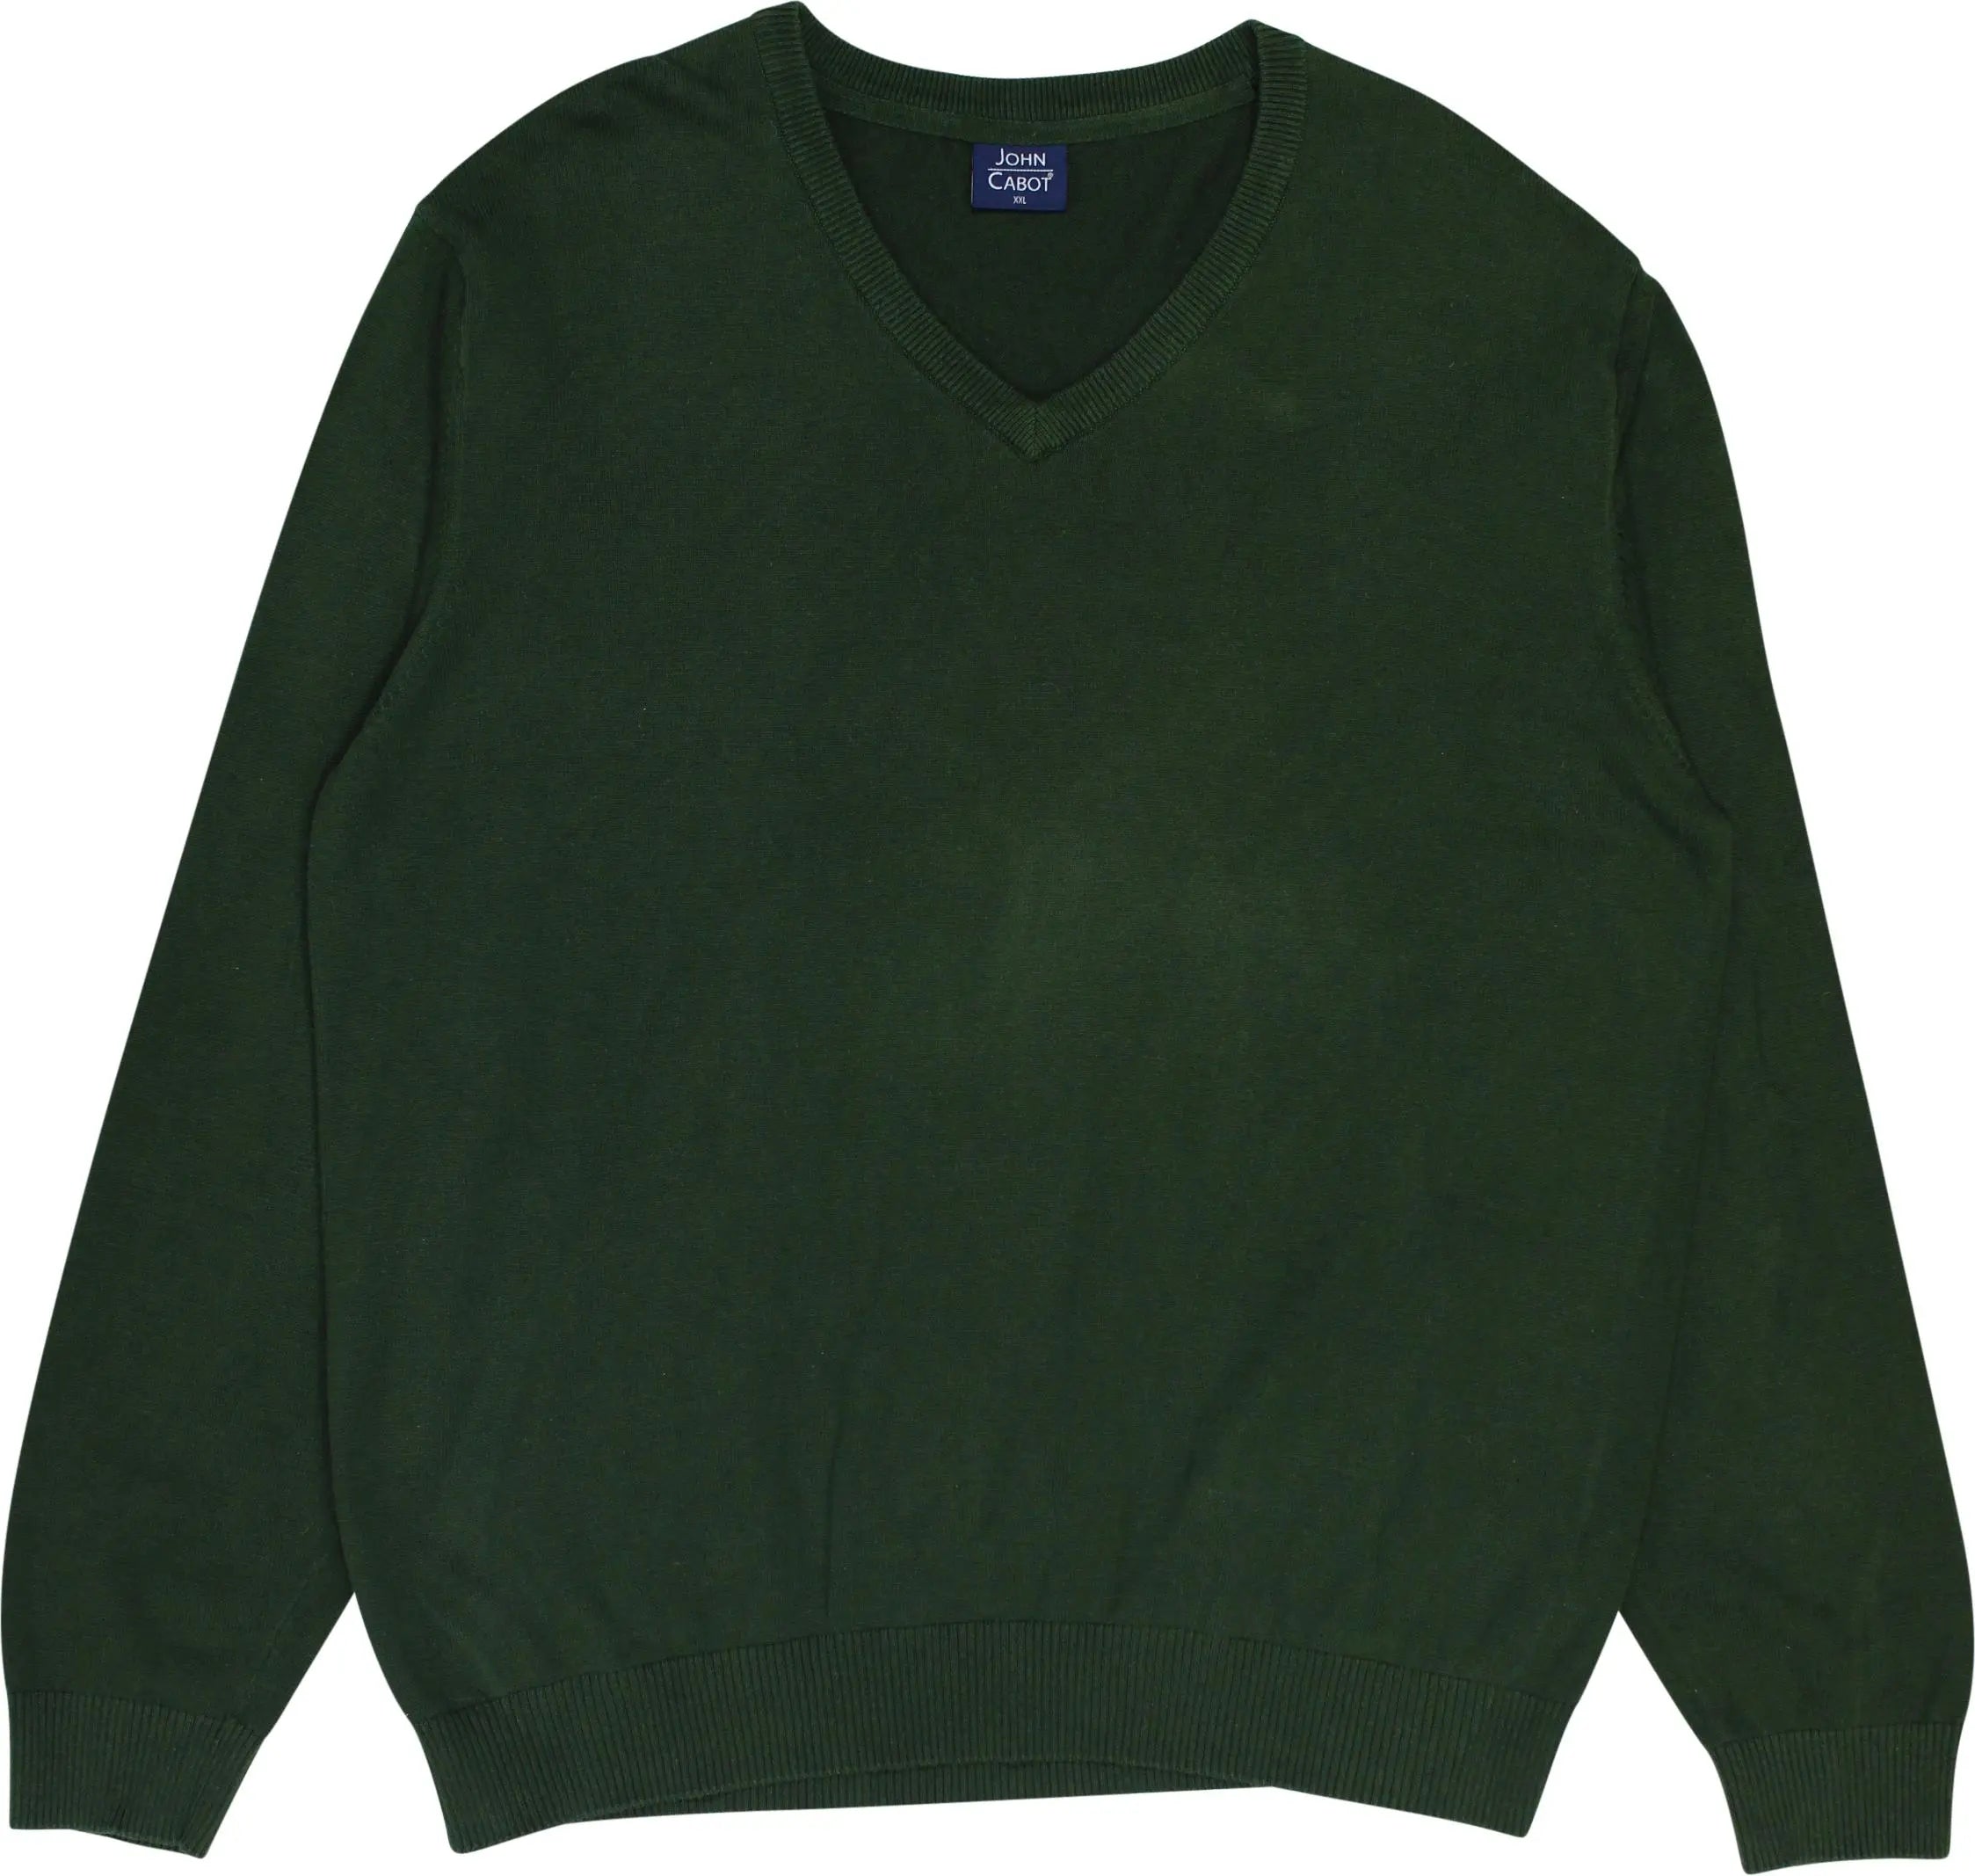 John Cabot - Green V-Neck Jumper- ThriftTale.com - Vintage and second handclothing